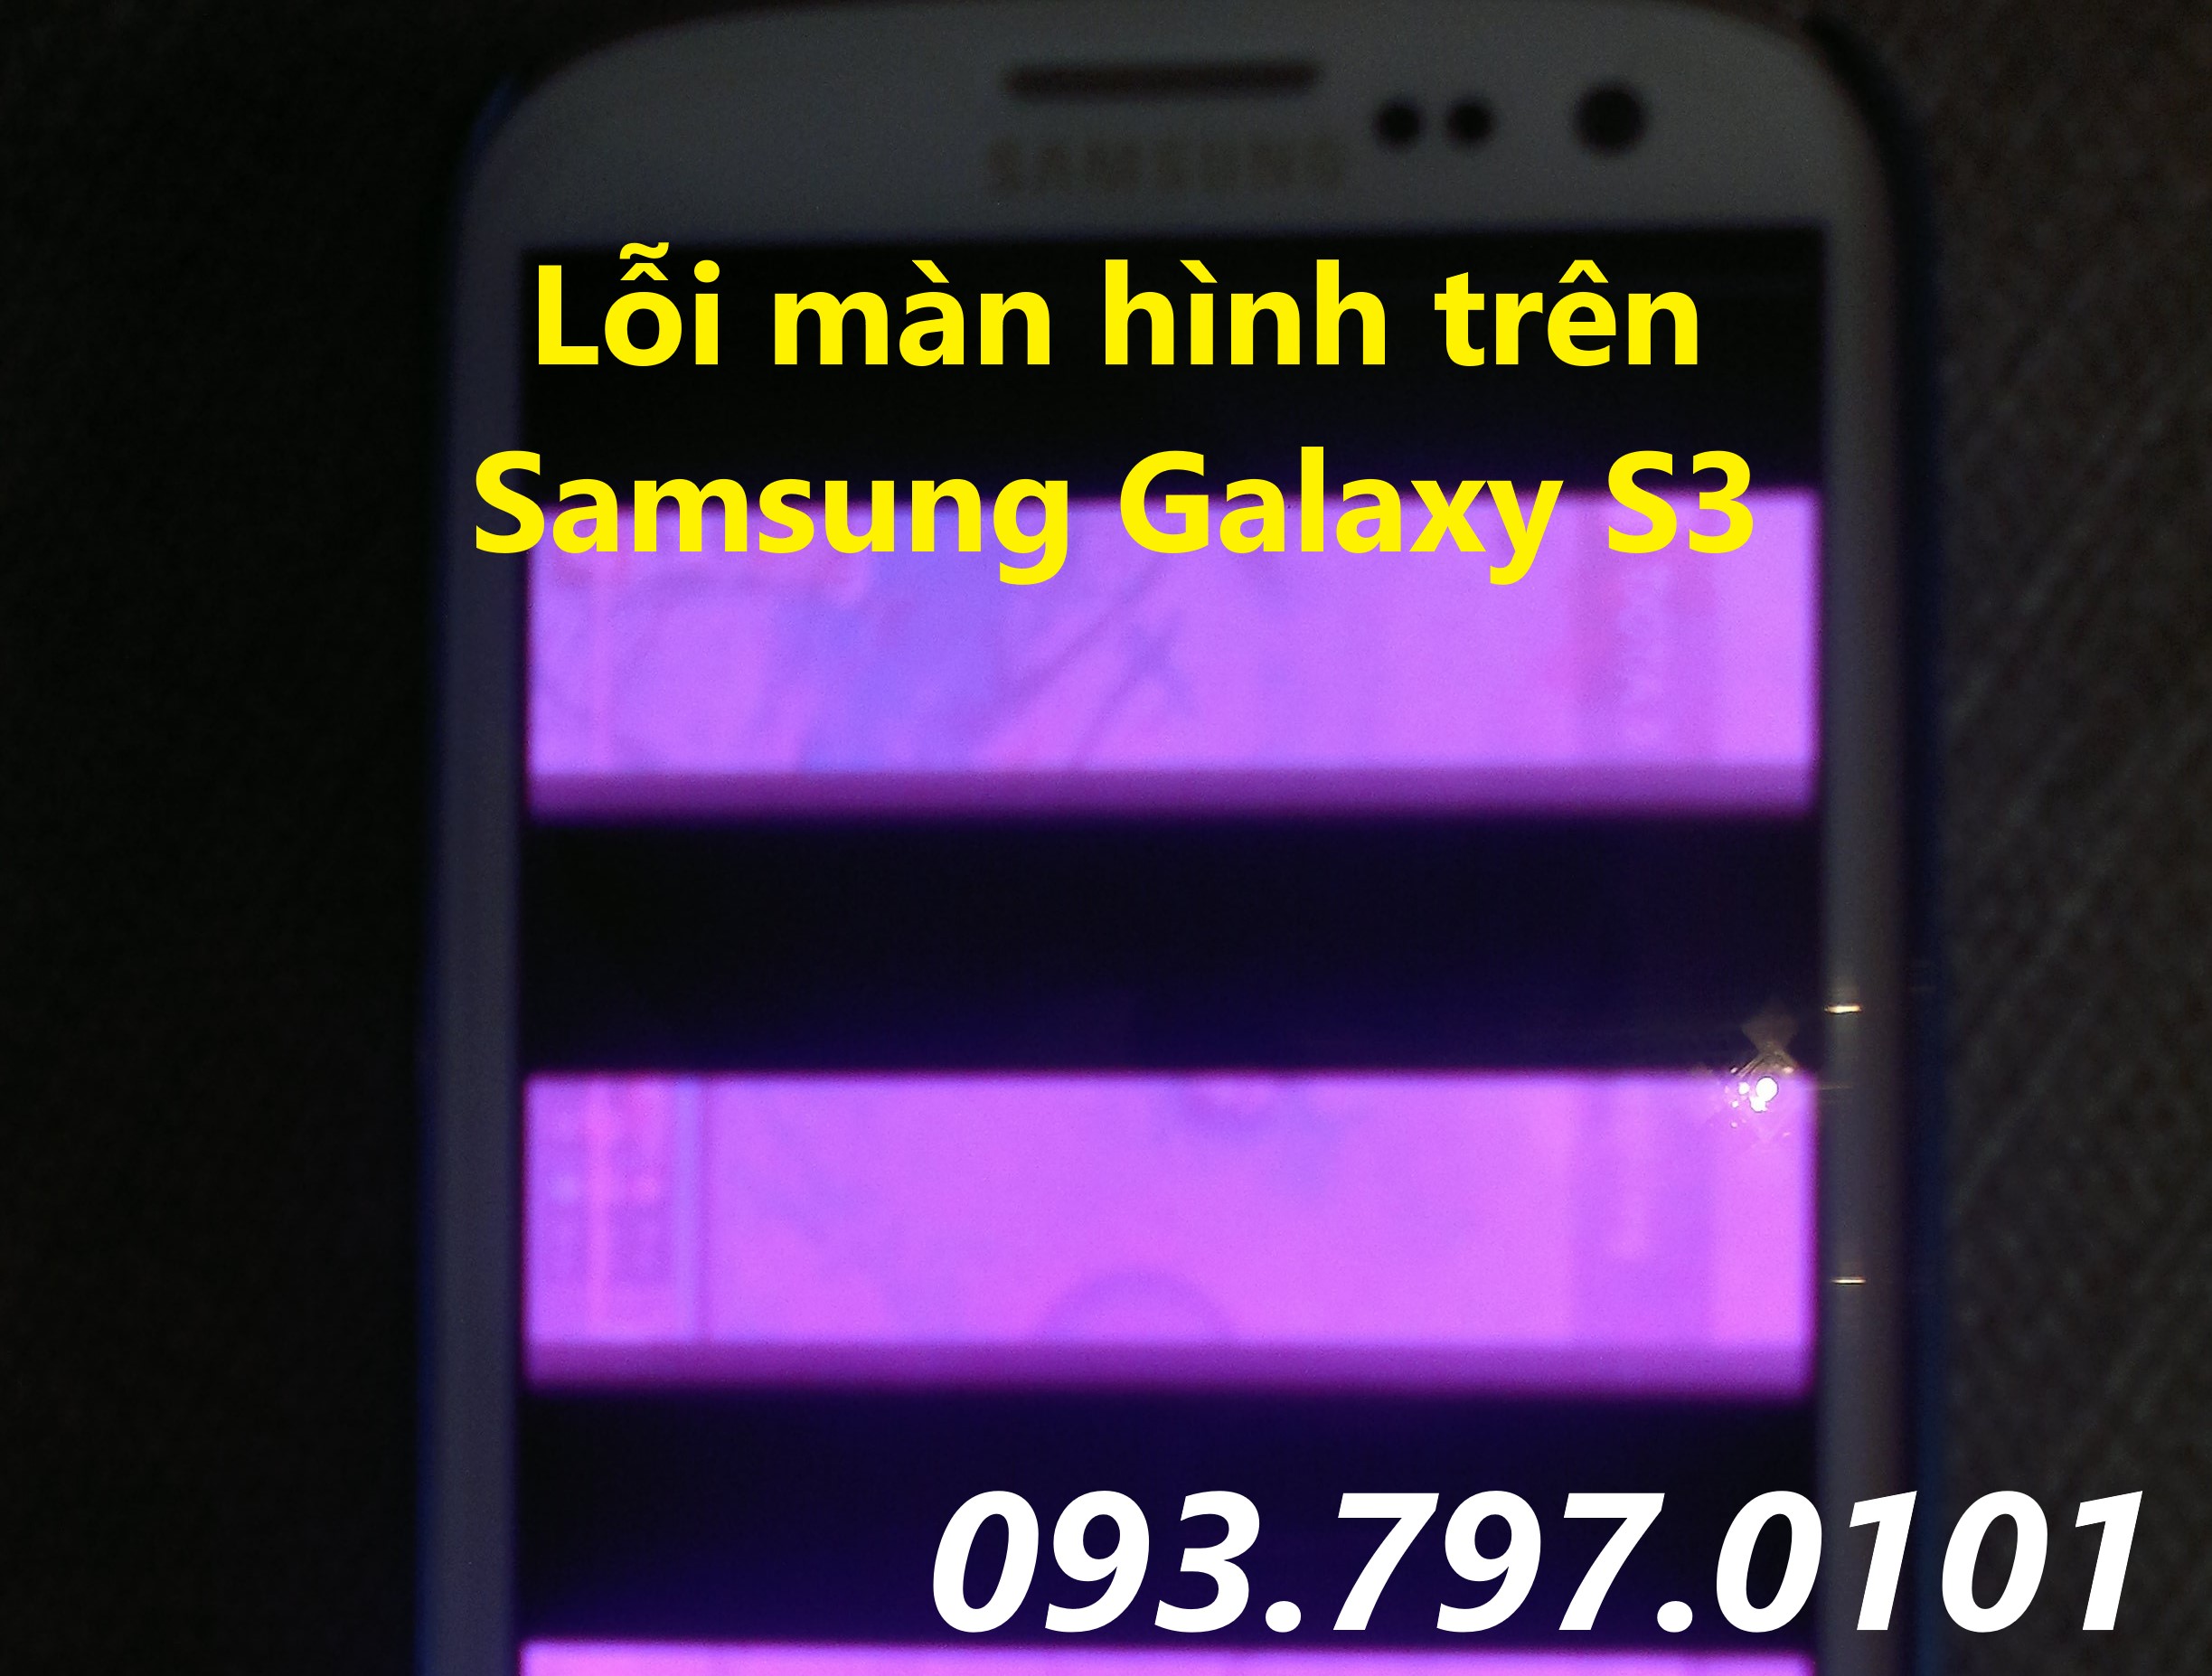 Lỗi màn hình thường gặp trên Samsung Galaxy S3